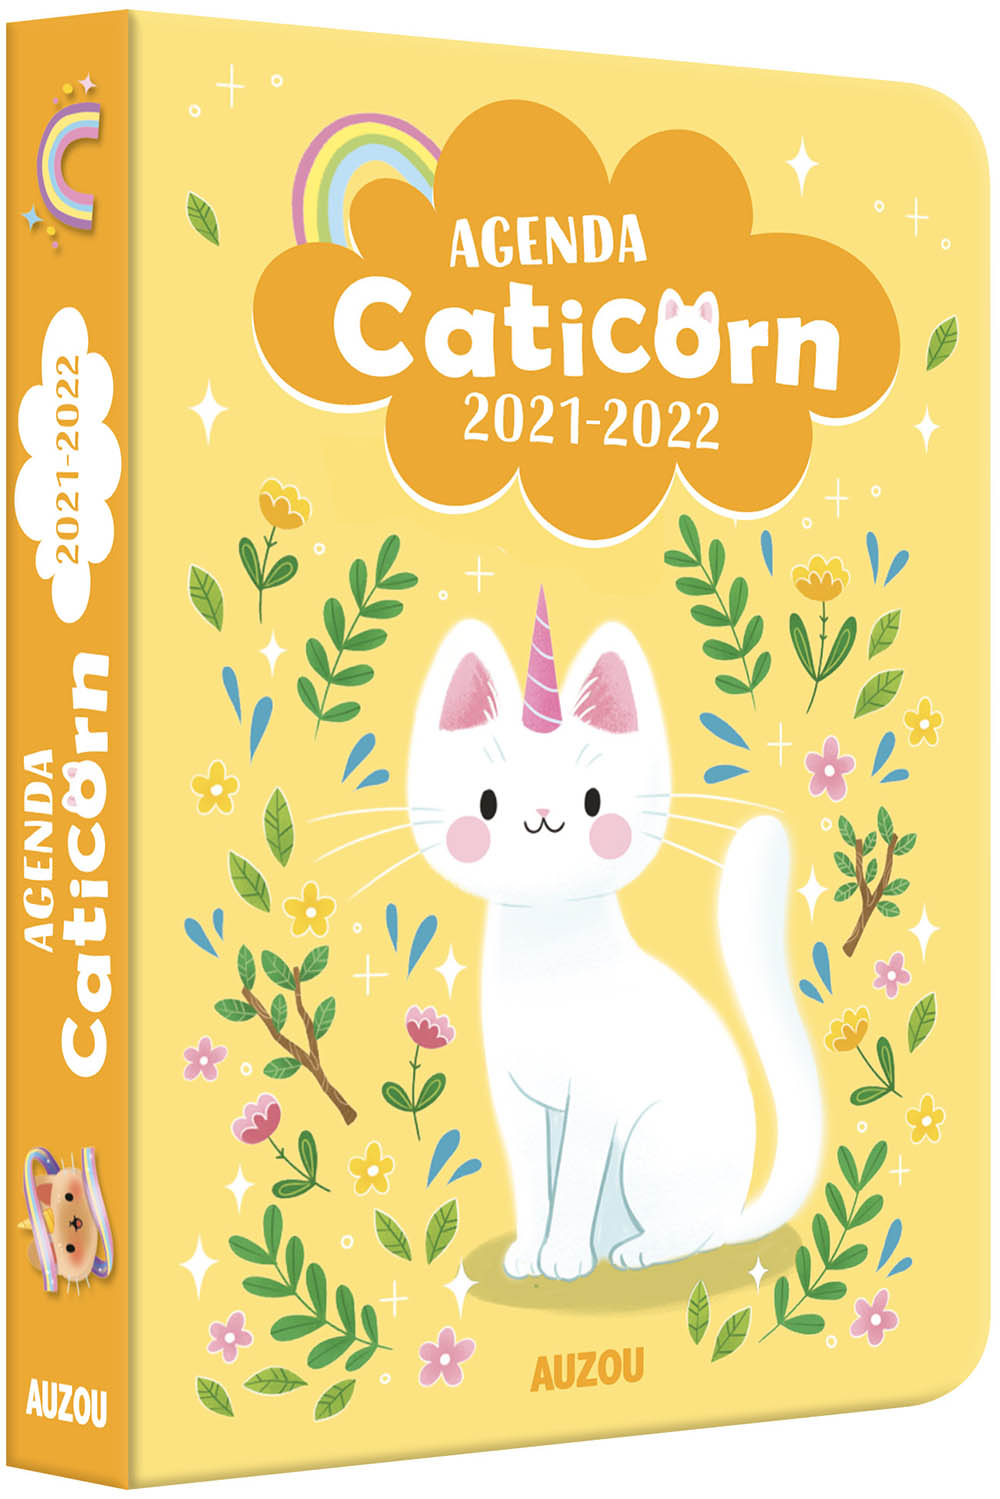 Agenda Caticorn 2021-2022